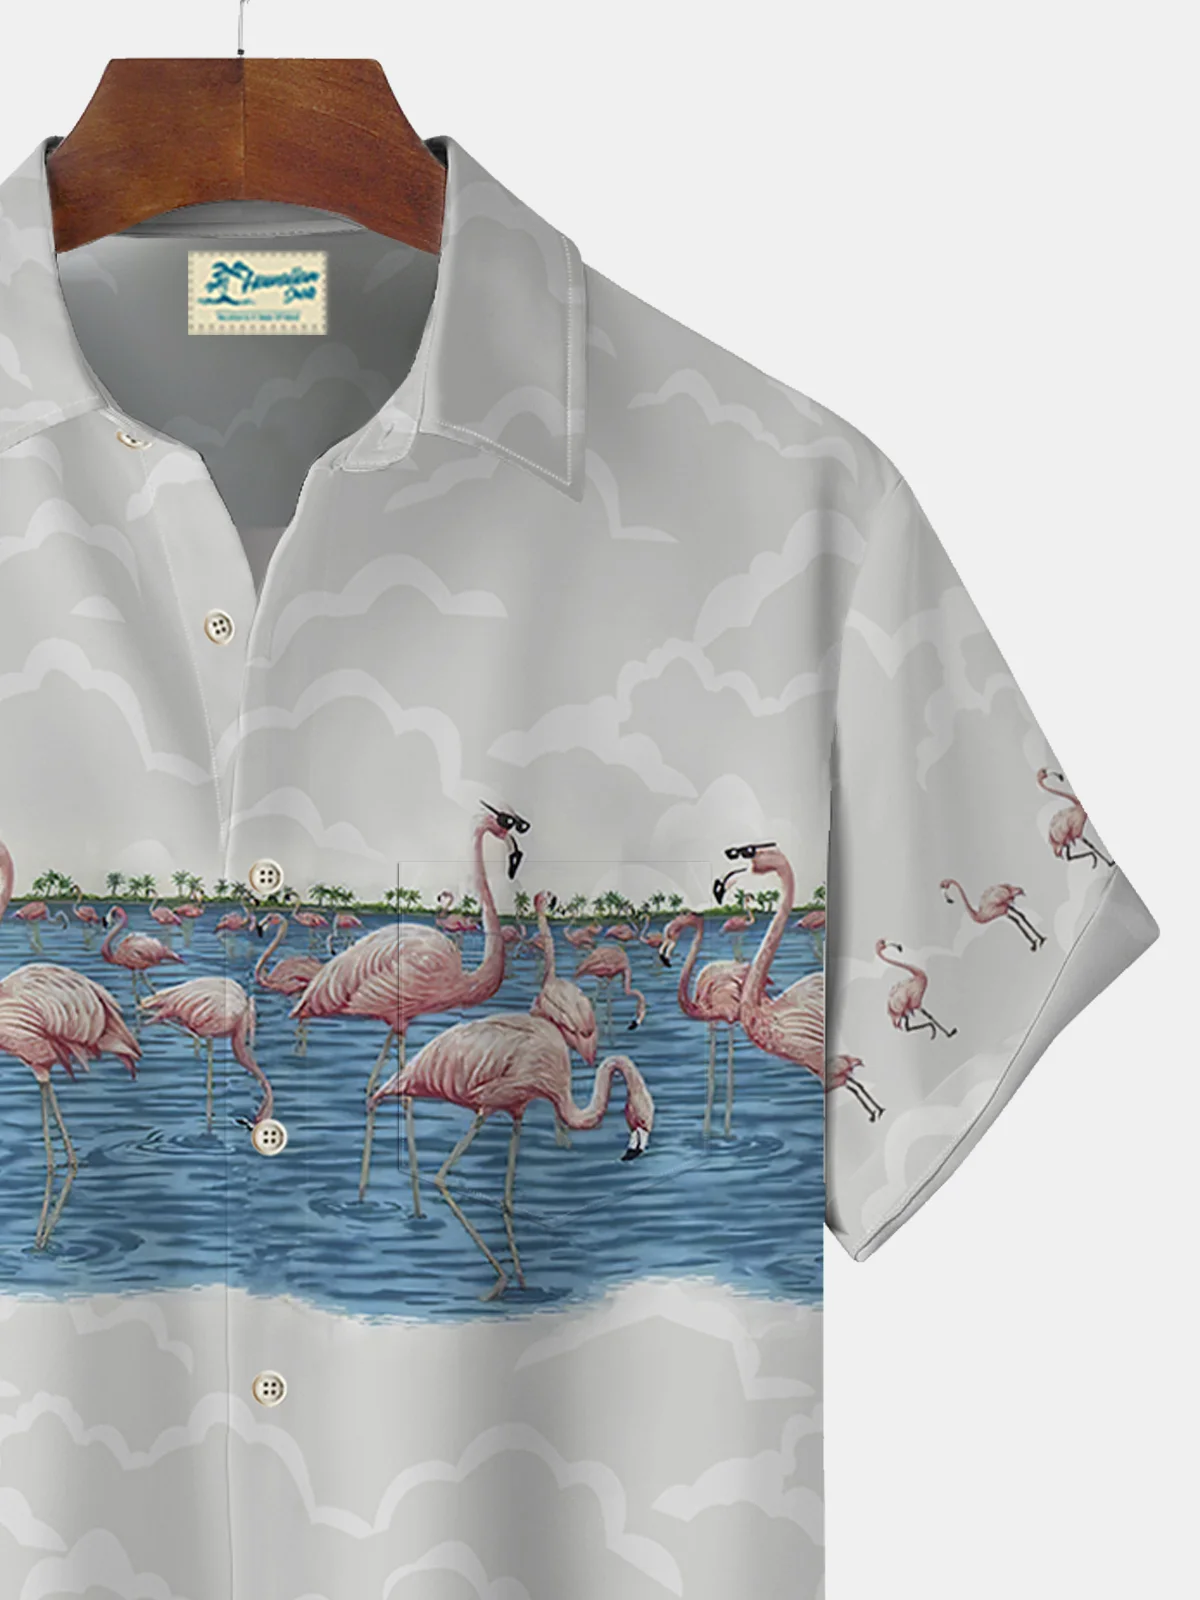 Royaura Flamingo Coconut Palm Print Beach Men's Hawaiian Oversized Shirt With Pocket